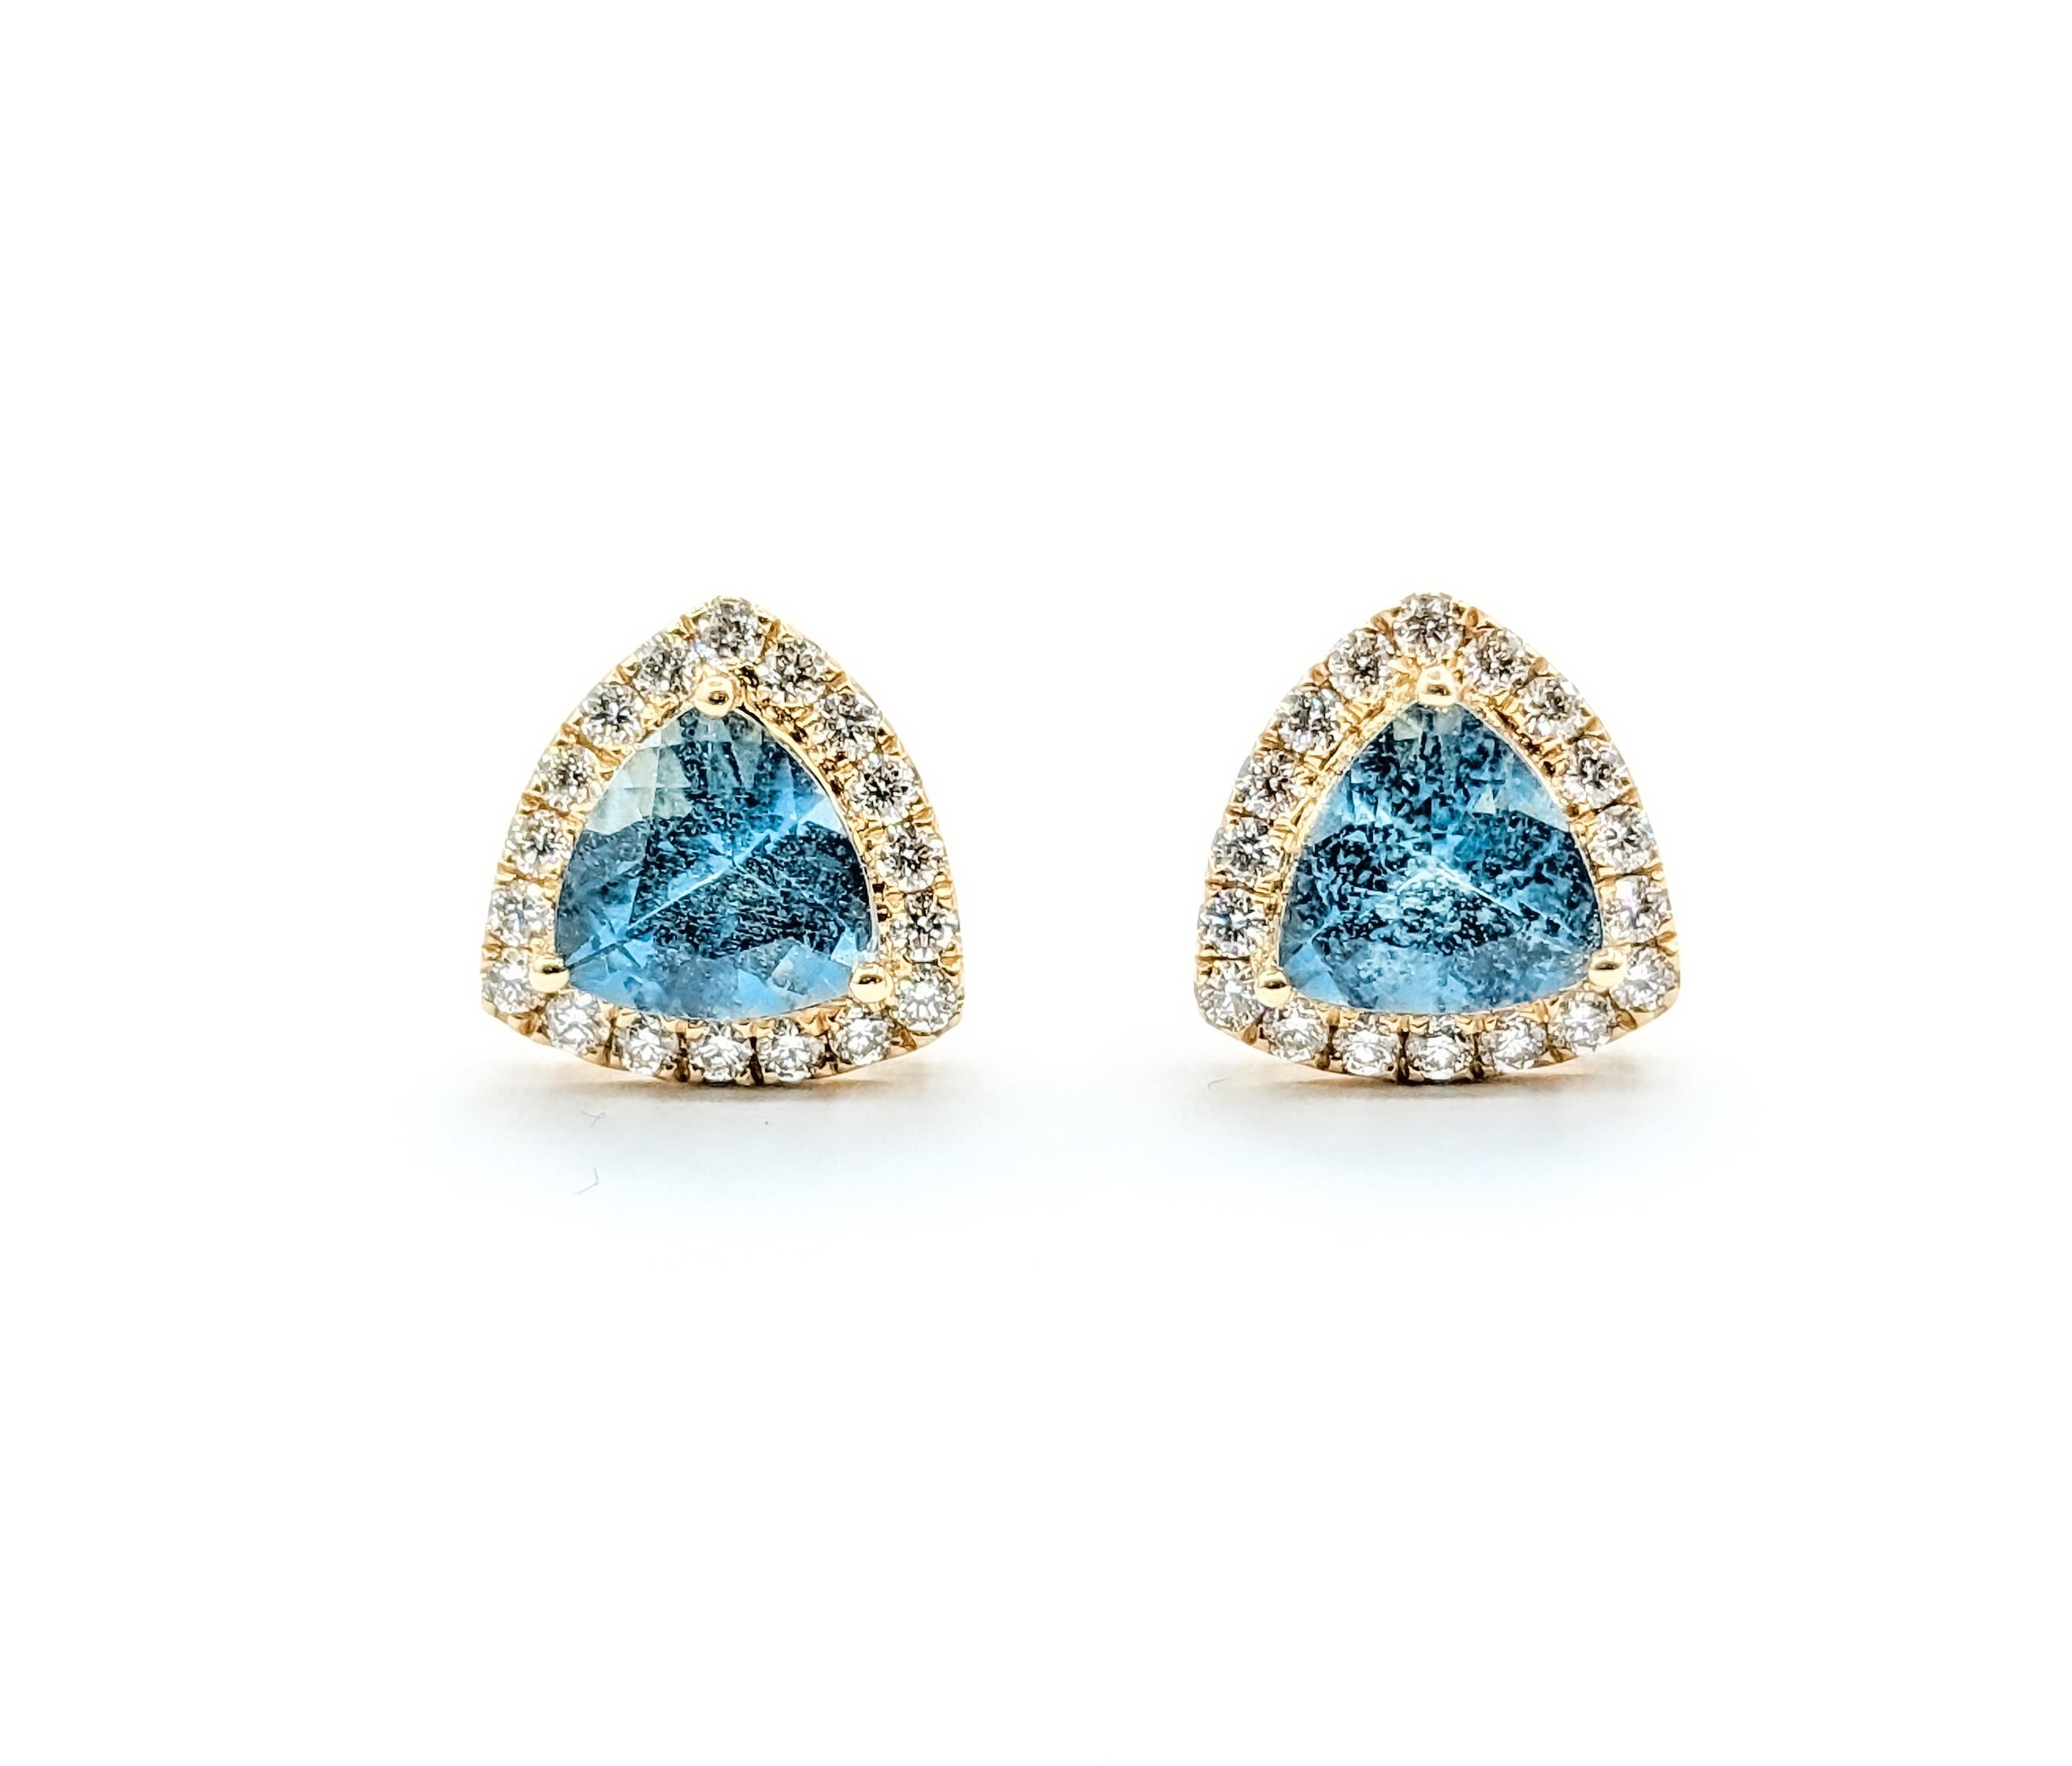 Tiefblauer Aquamarin & Diamant-Ohrstecker

Diese exquisiten Ohrringe sind sorgfältig aus 14 Karat Gelbgold gefertigt und mit 0,30 ct schillernden runden Diamanten besetzt. Die Diamanten, die für ihr faszinierendes Funkeln bekannt sind, besitzen die